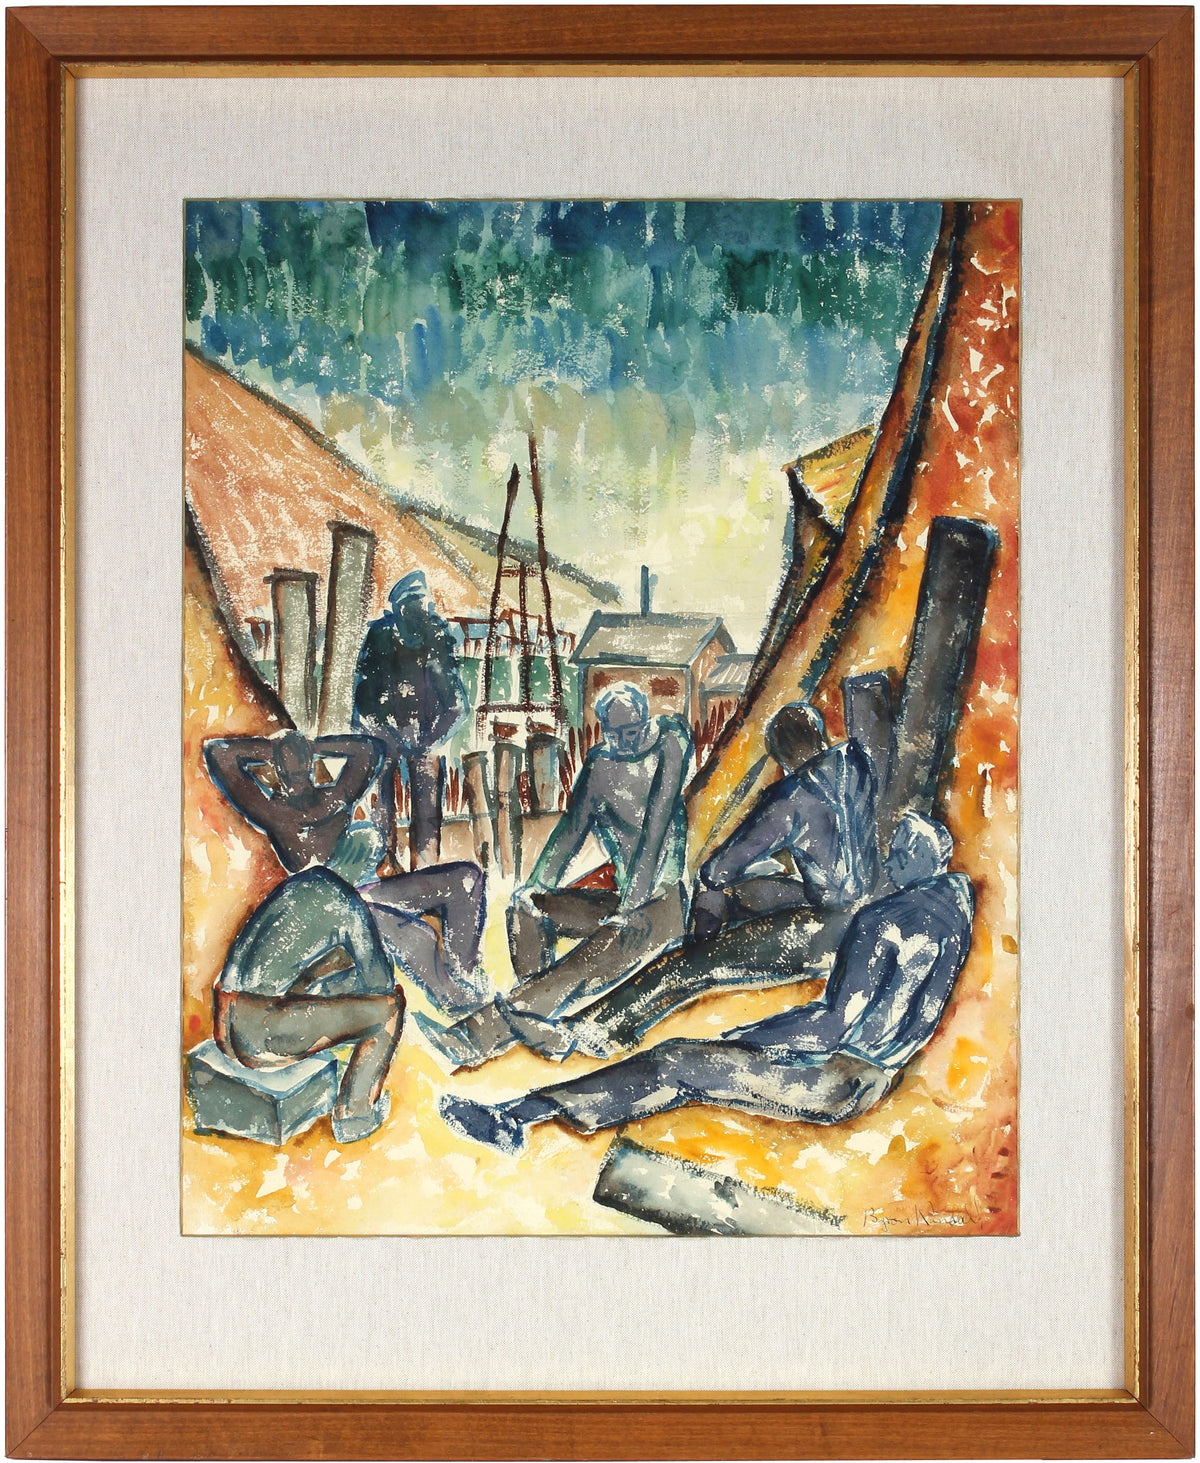 &lt;i&gt;Six Men by the Sea&lt;/i&gt;&lt;br&gt;1937 WPA Watercolor&lt;br&gt;&lt;br&gt;#31359